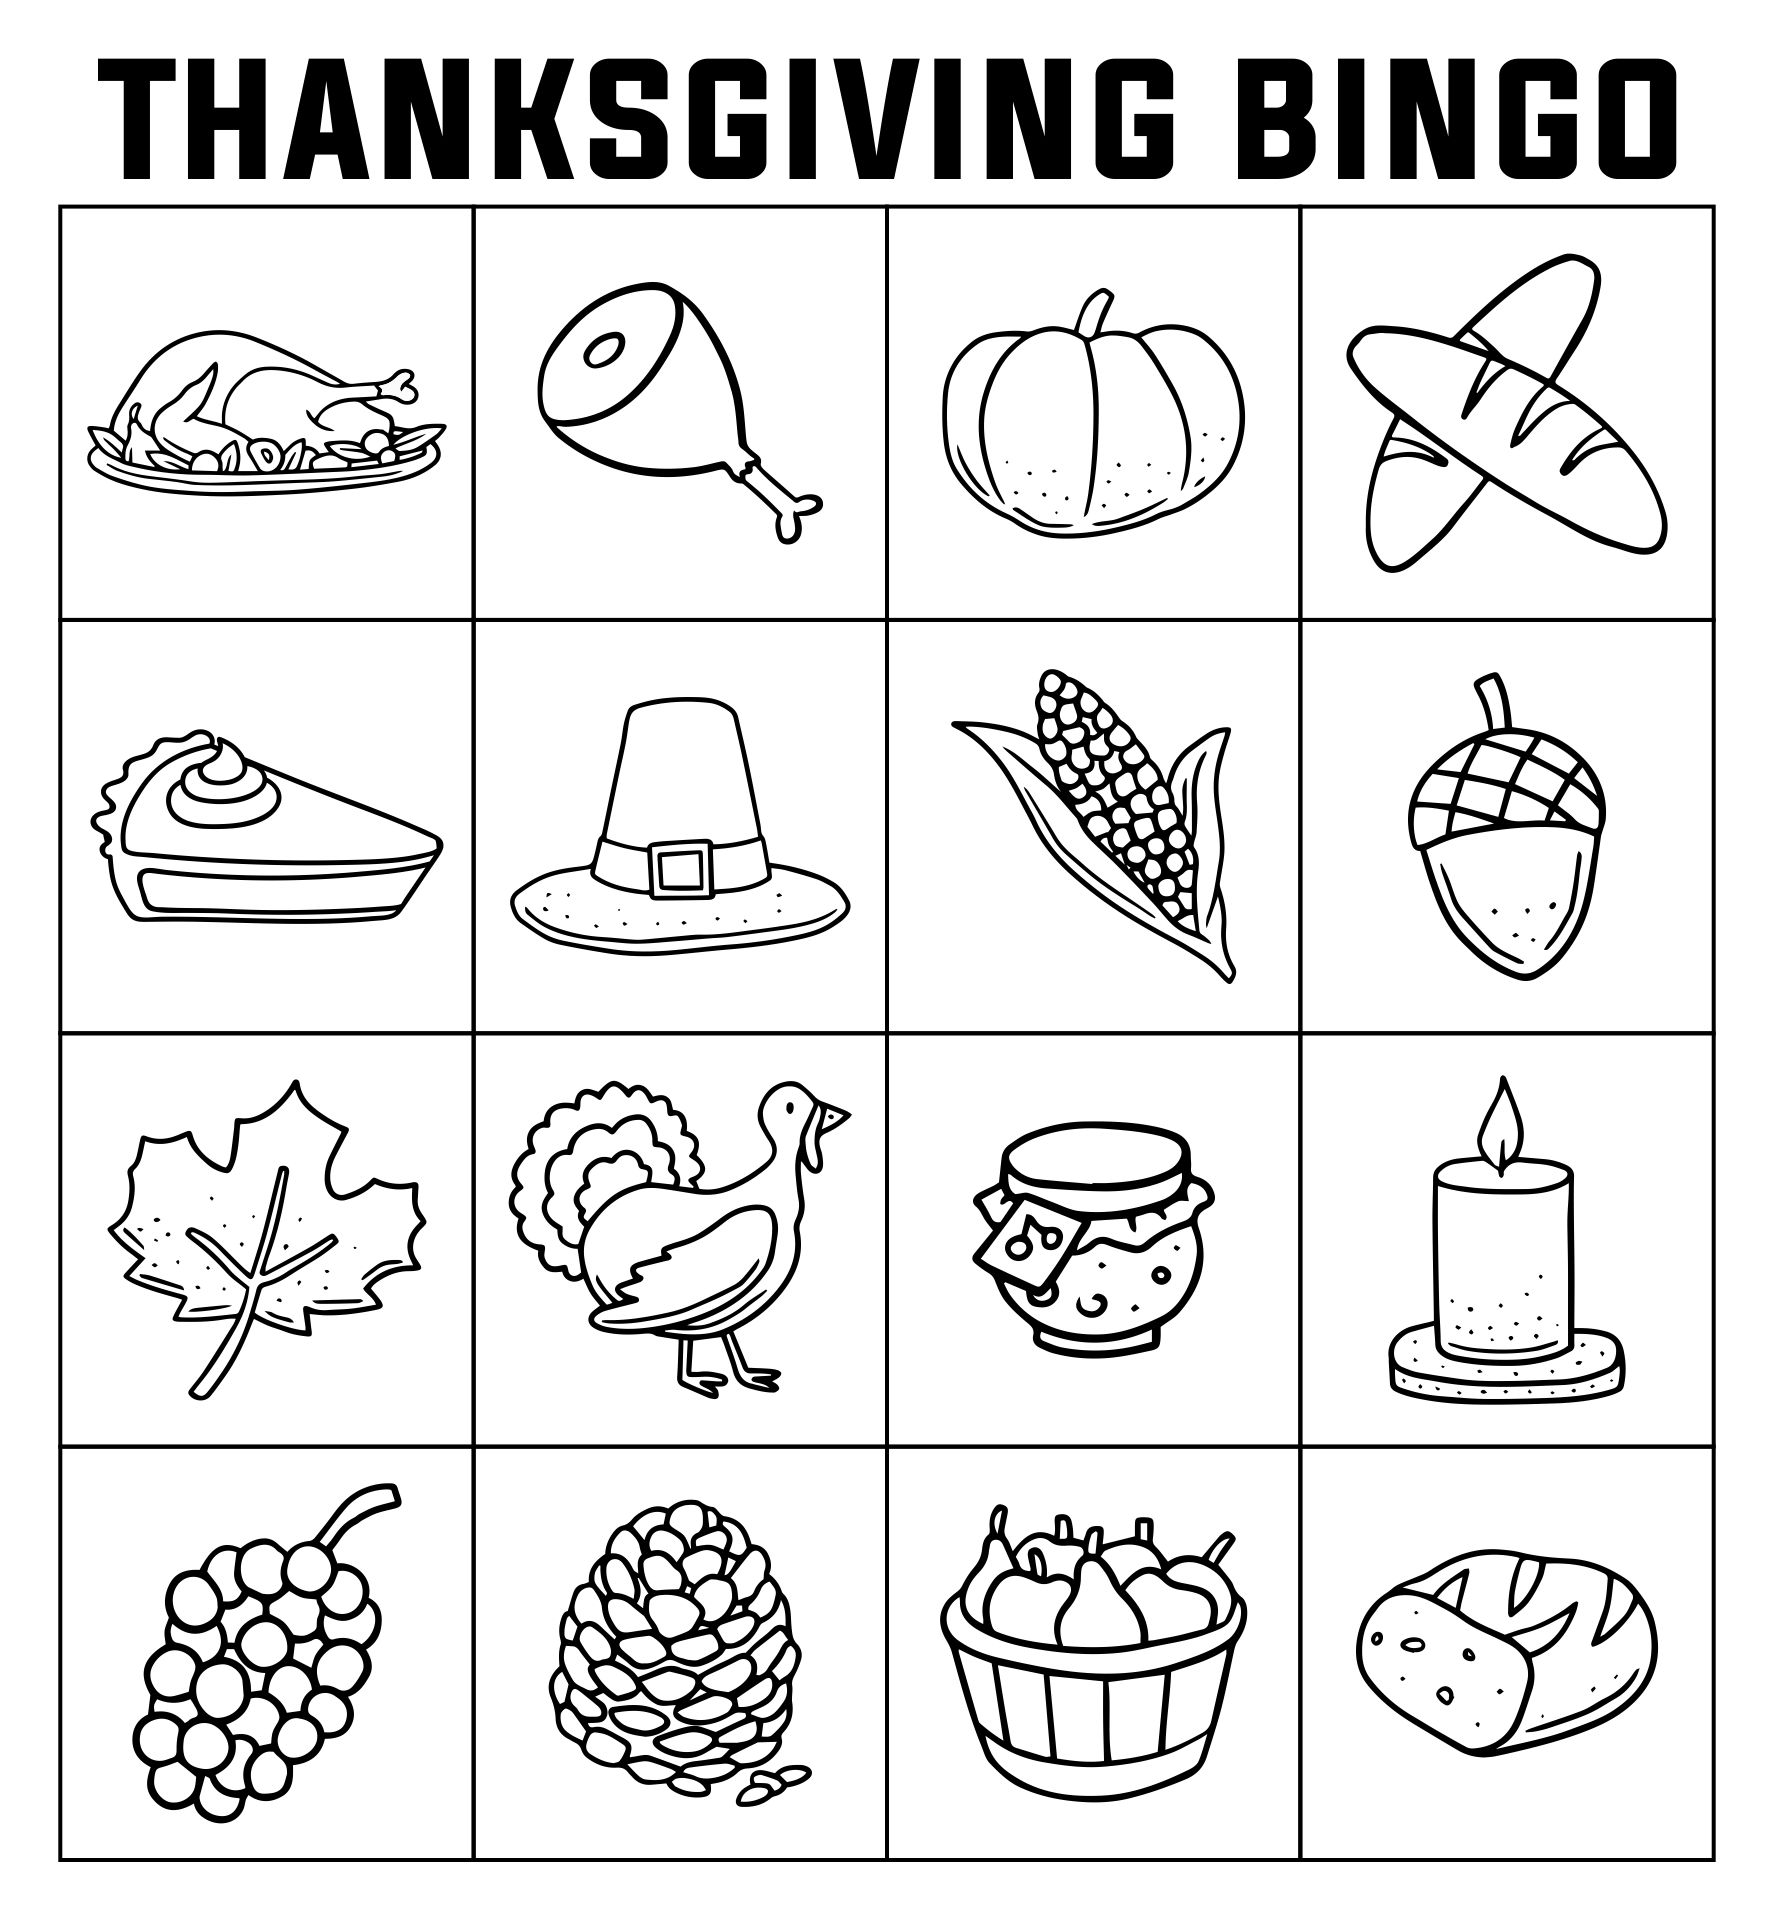 Thanksgiving Bingo Board Coloring Page